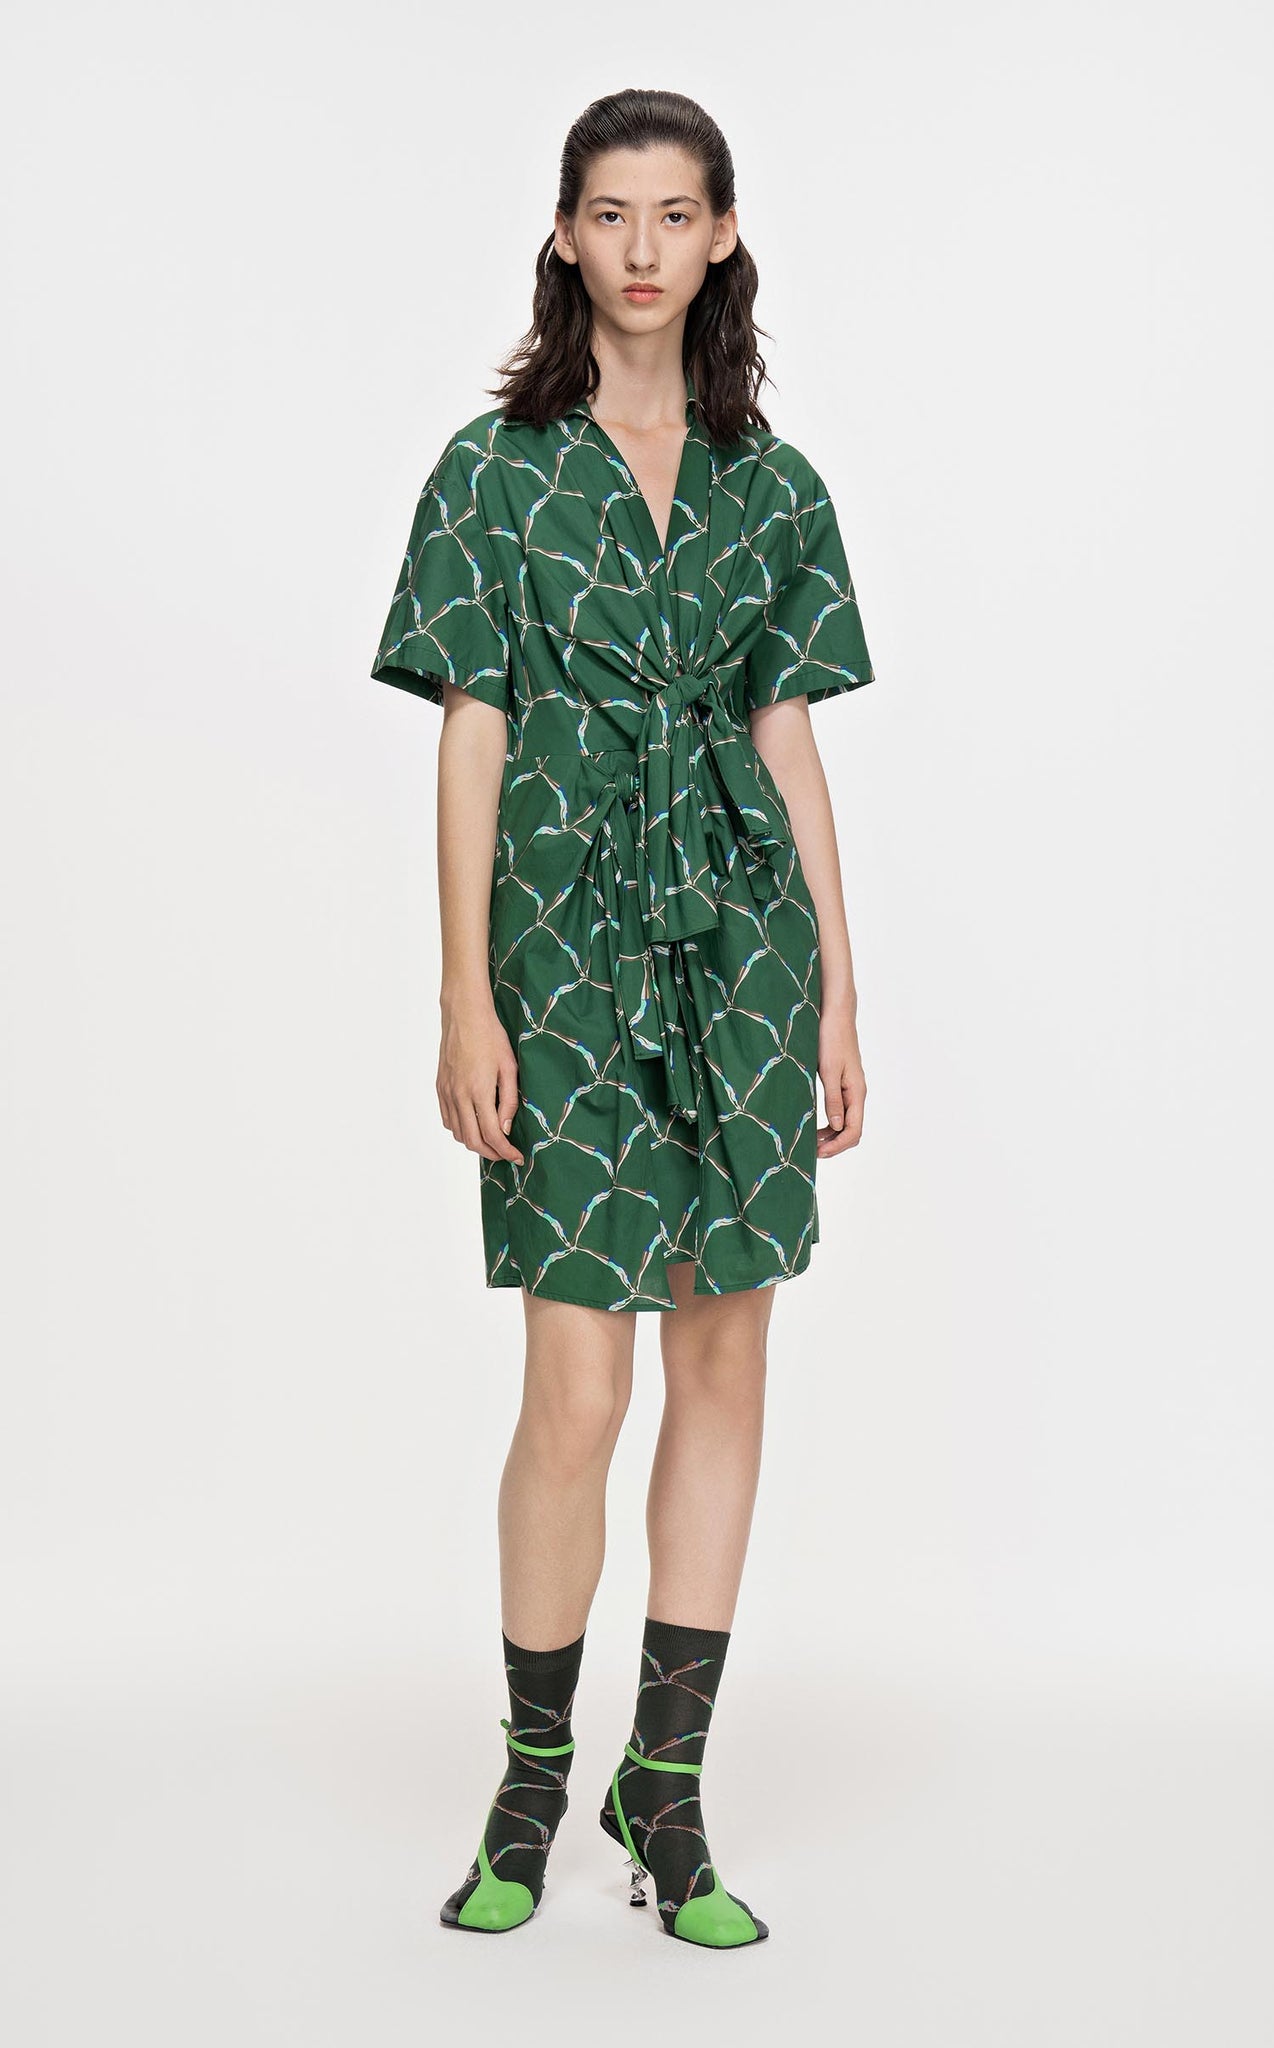 Dresses / JNBY Full Print Short Sleeve Dress (100% Cotton)